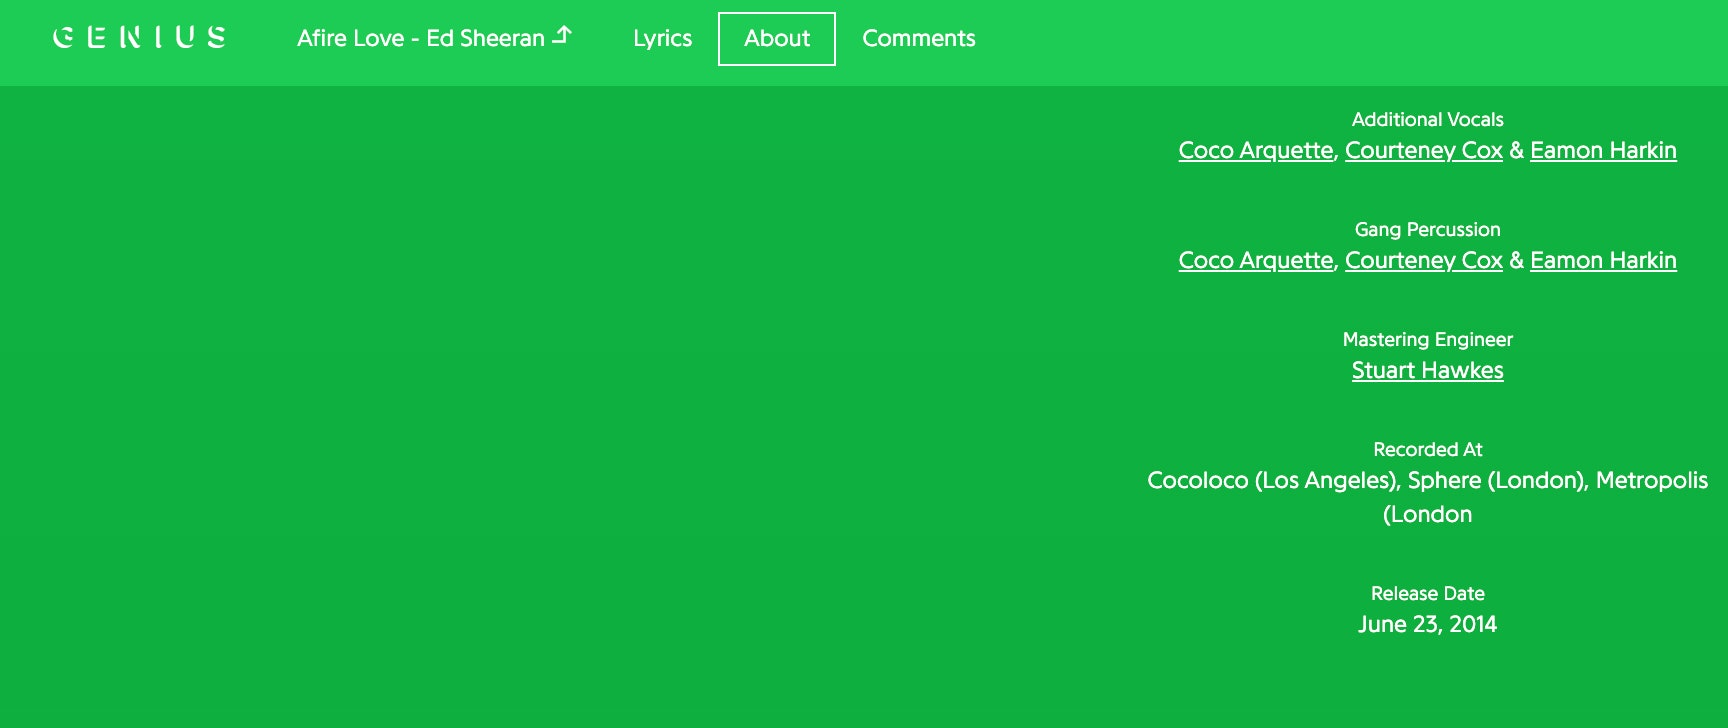 Courteney Cox é mais do que apenas amiga de Ed Sheeran - ela canta em seus álbuns